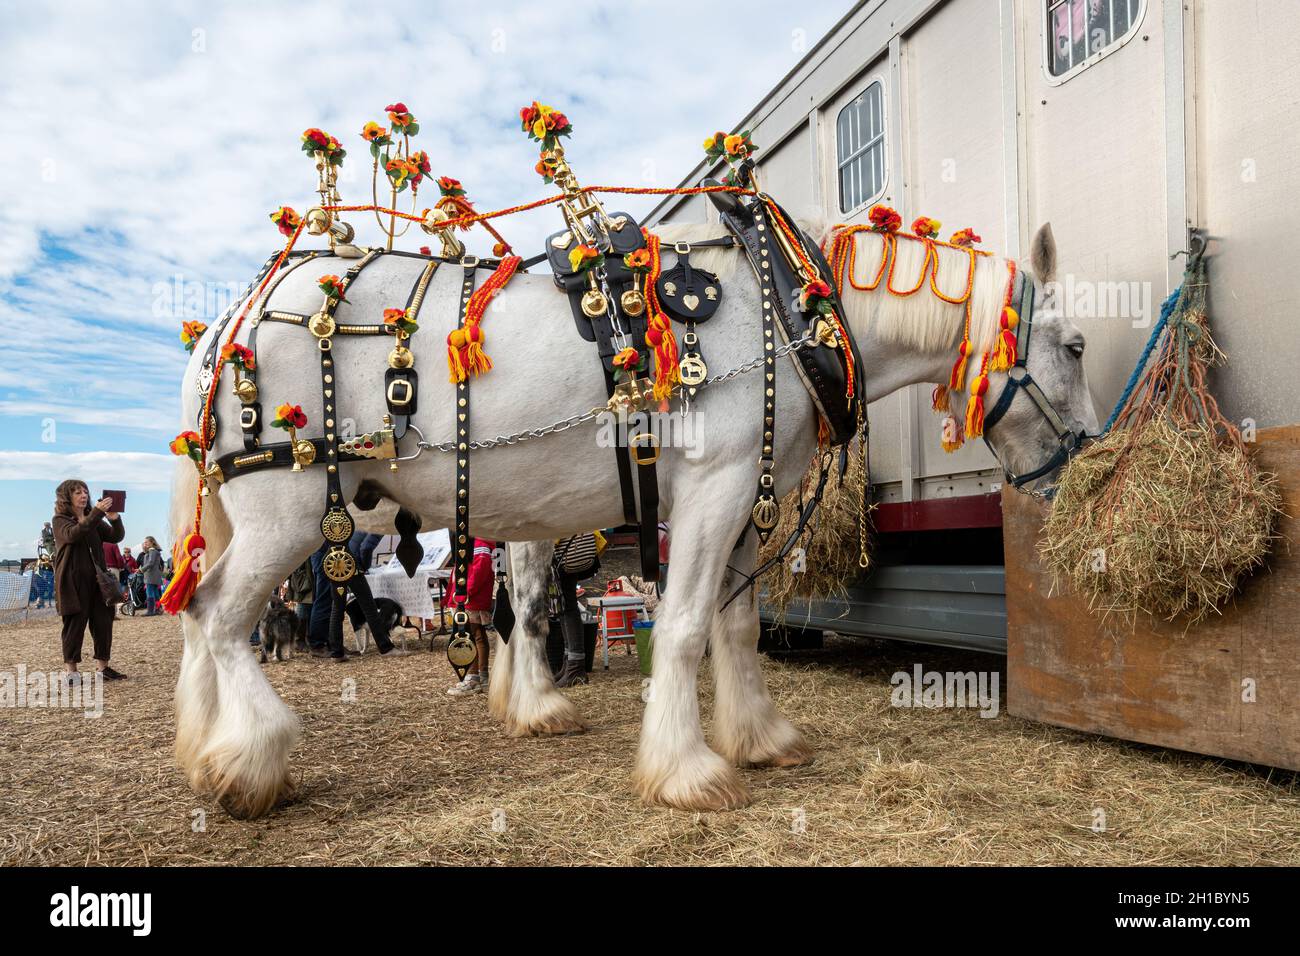 Le cheval gris en harnais décoré lors d'un événement de chevaux lourds, le grand match de labour de toute l'Angleterre qui s'est tenu à Droxford, Hampshire, Royaume-Uni.Octobre 2021. Banque D'Images